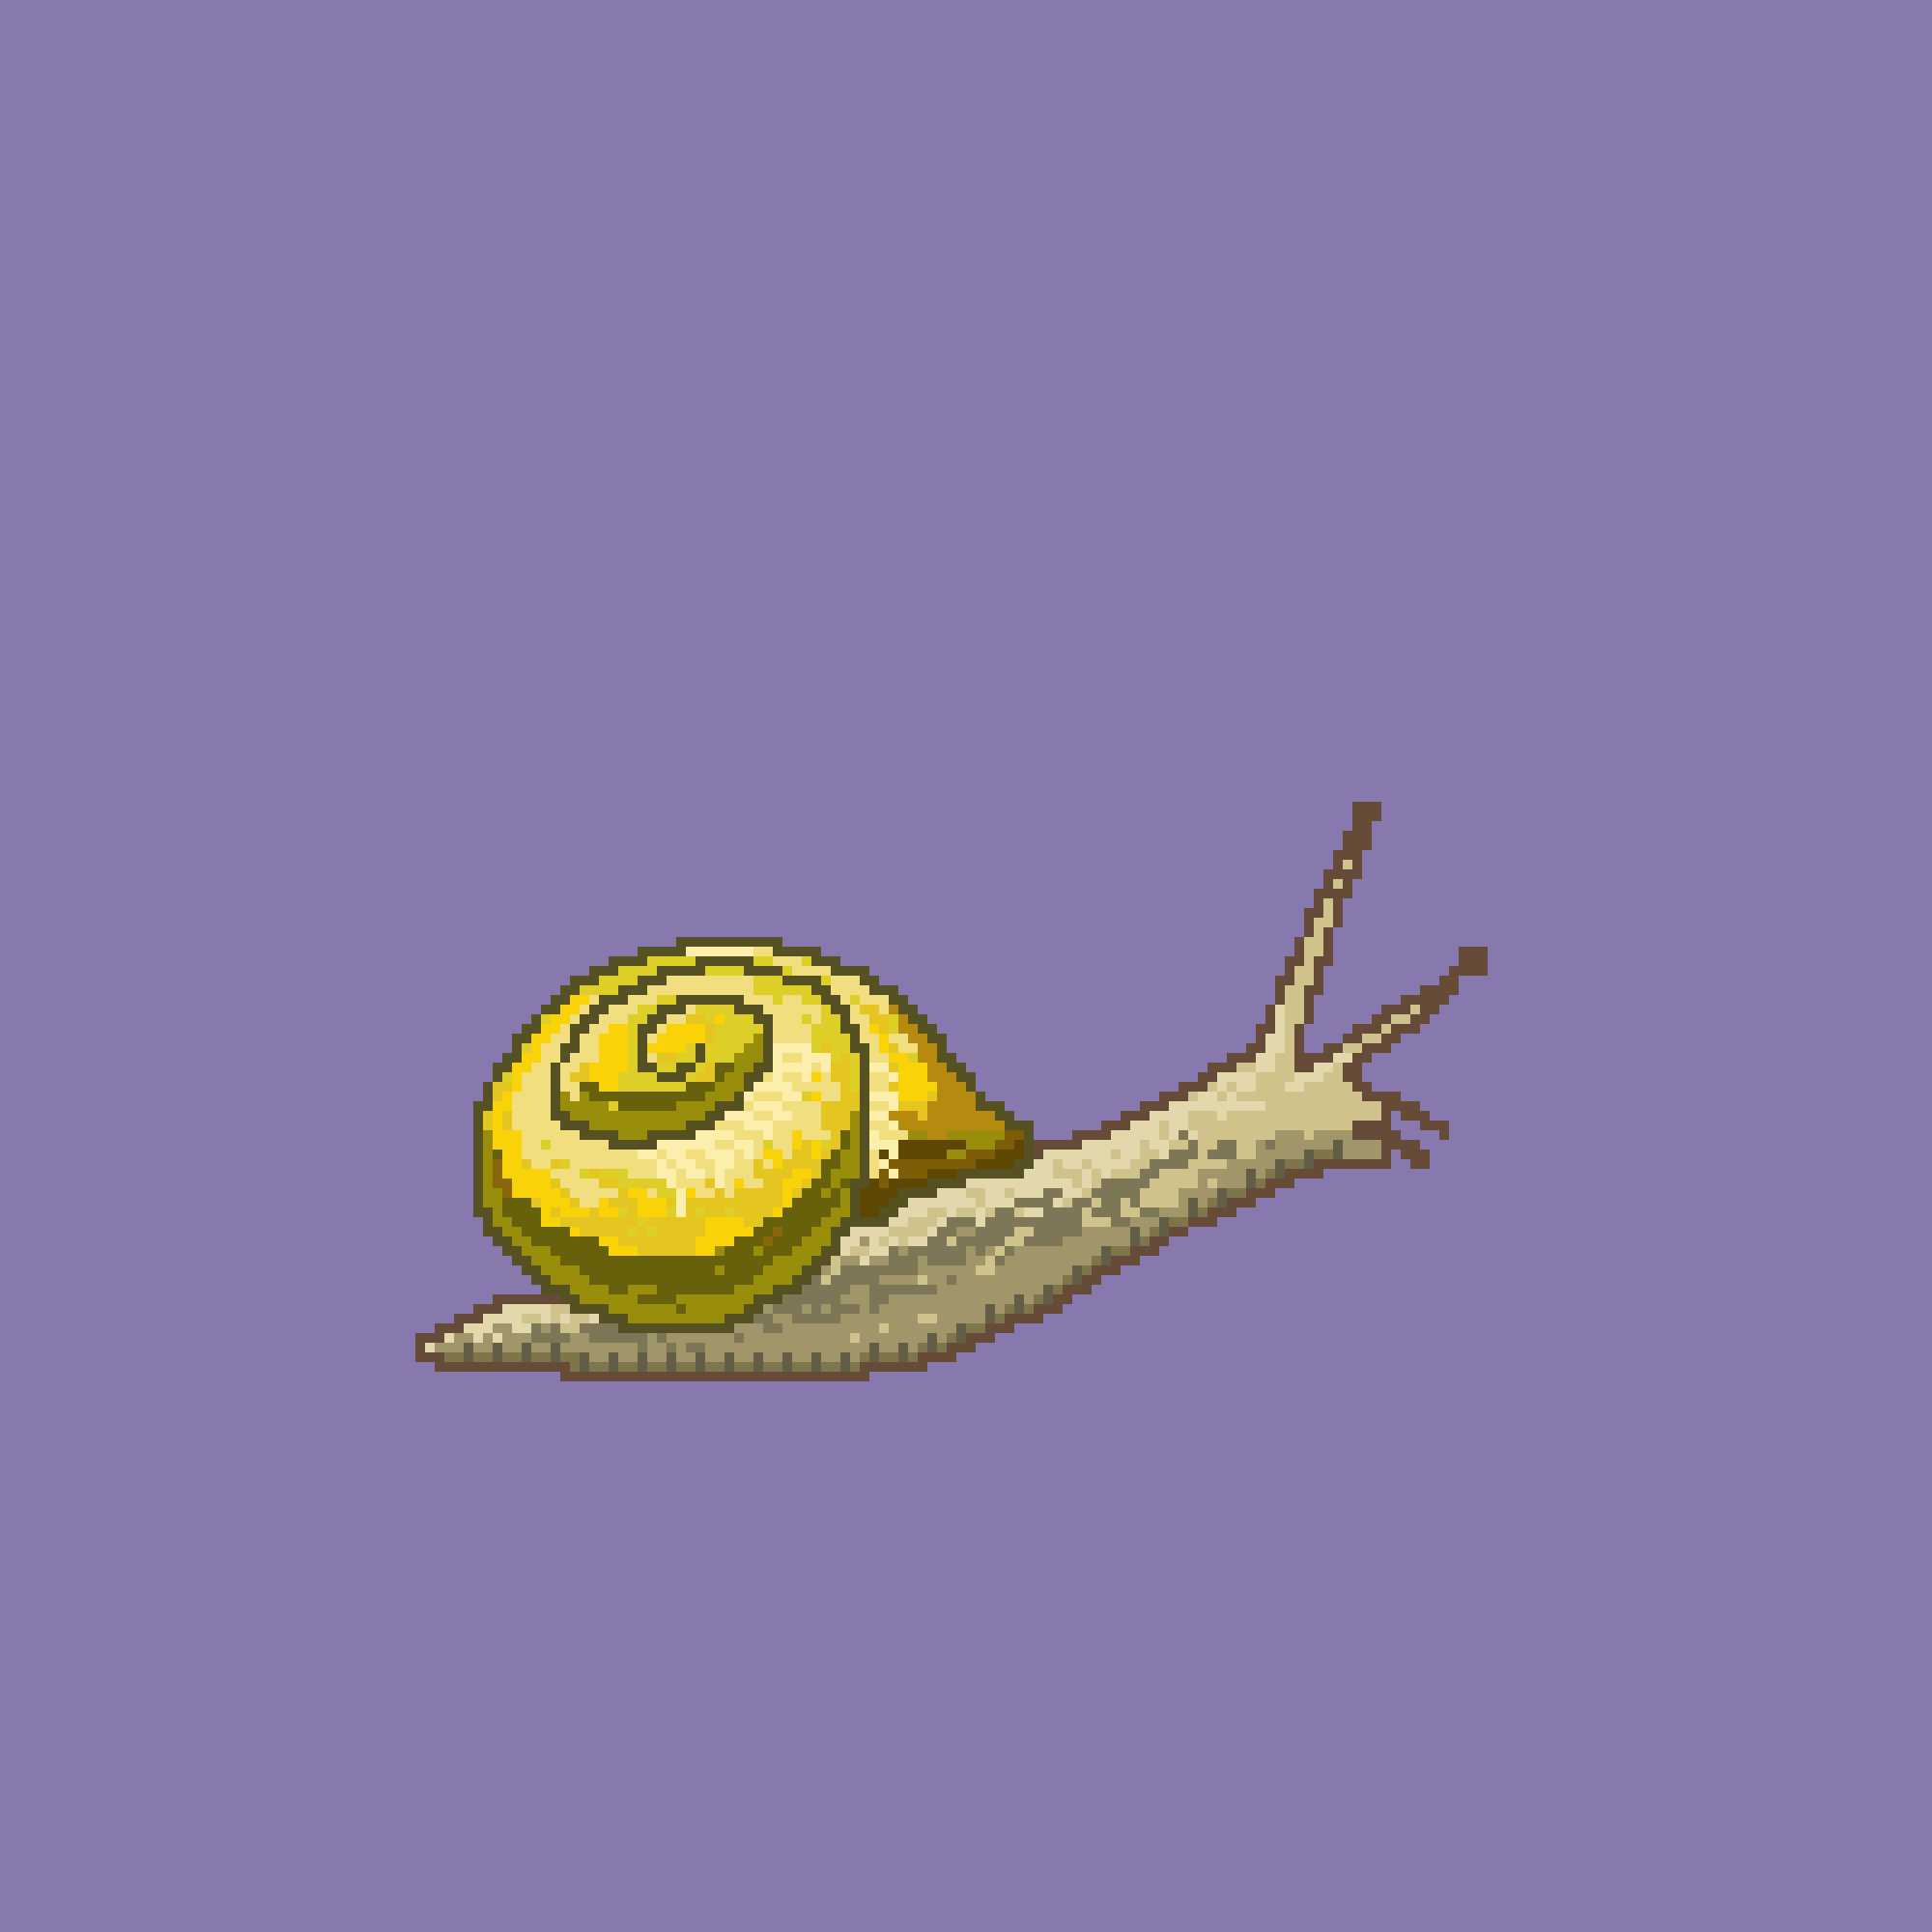 A Boring Snail